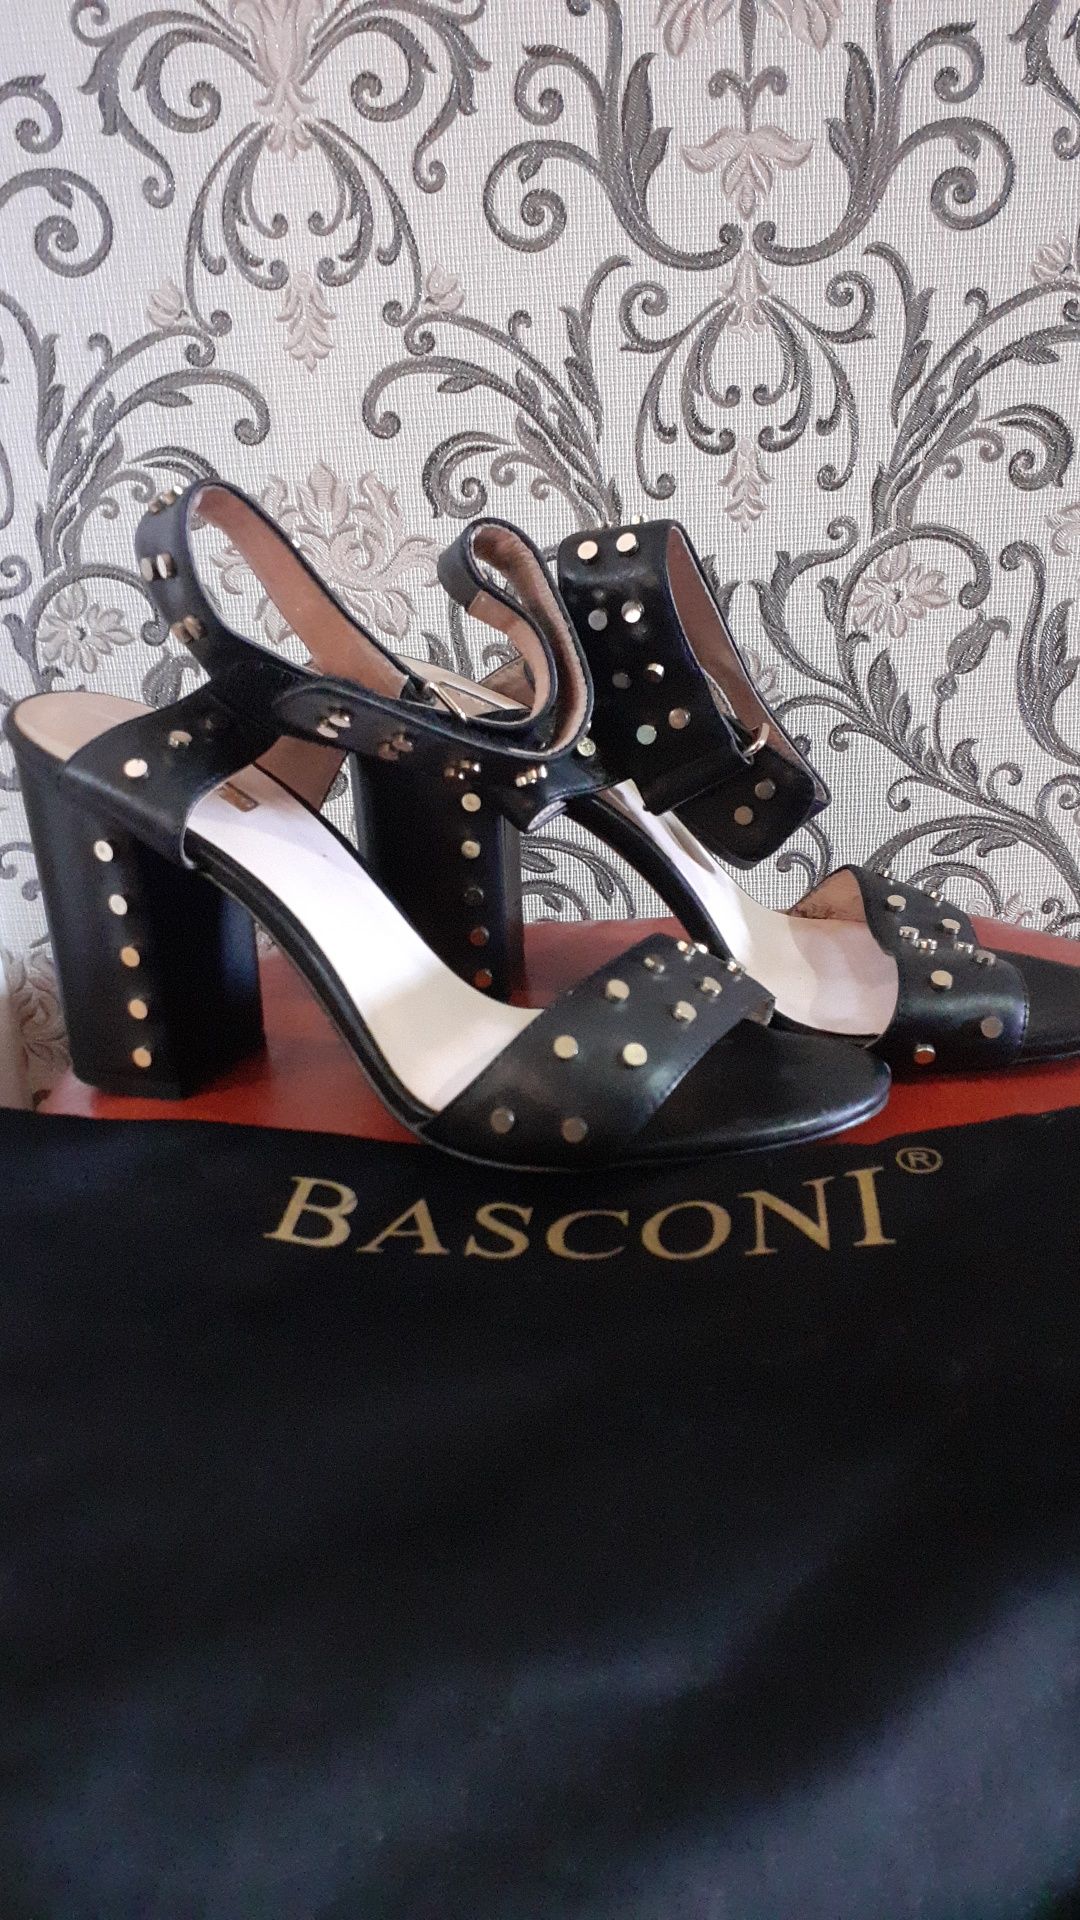 Продам босоножки хорошего качества фирмы Basconi